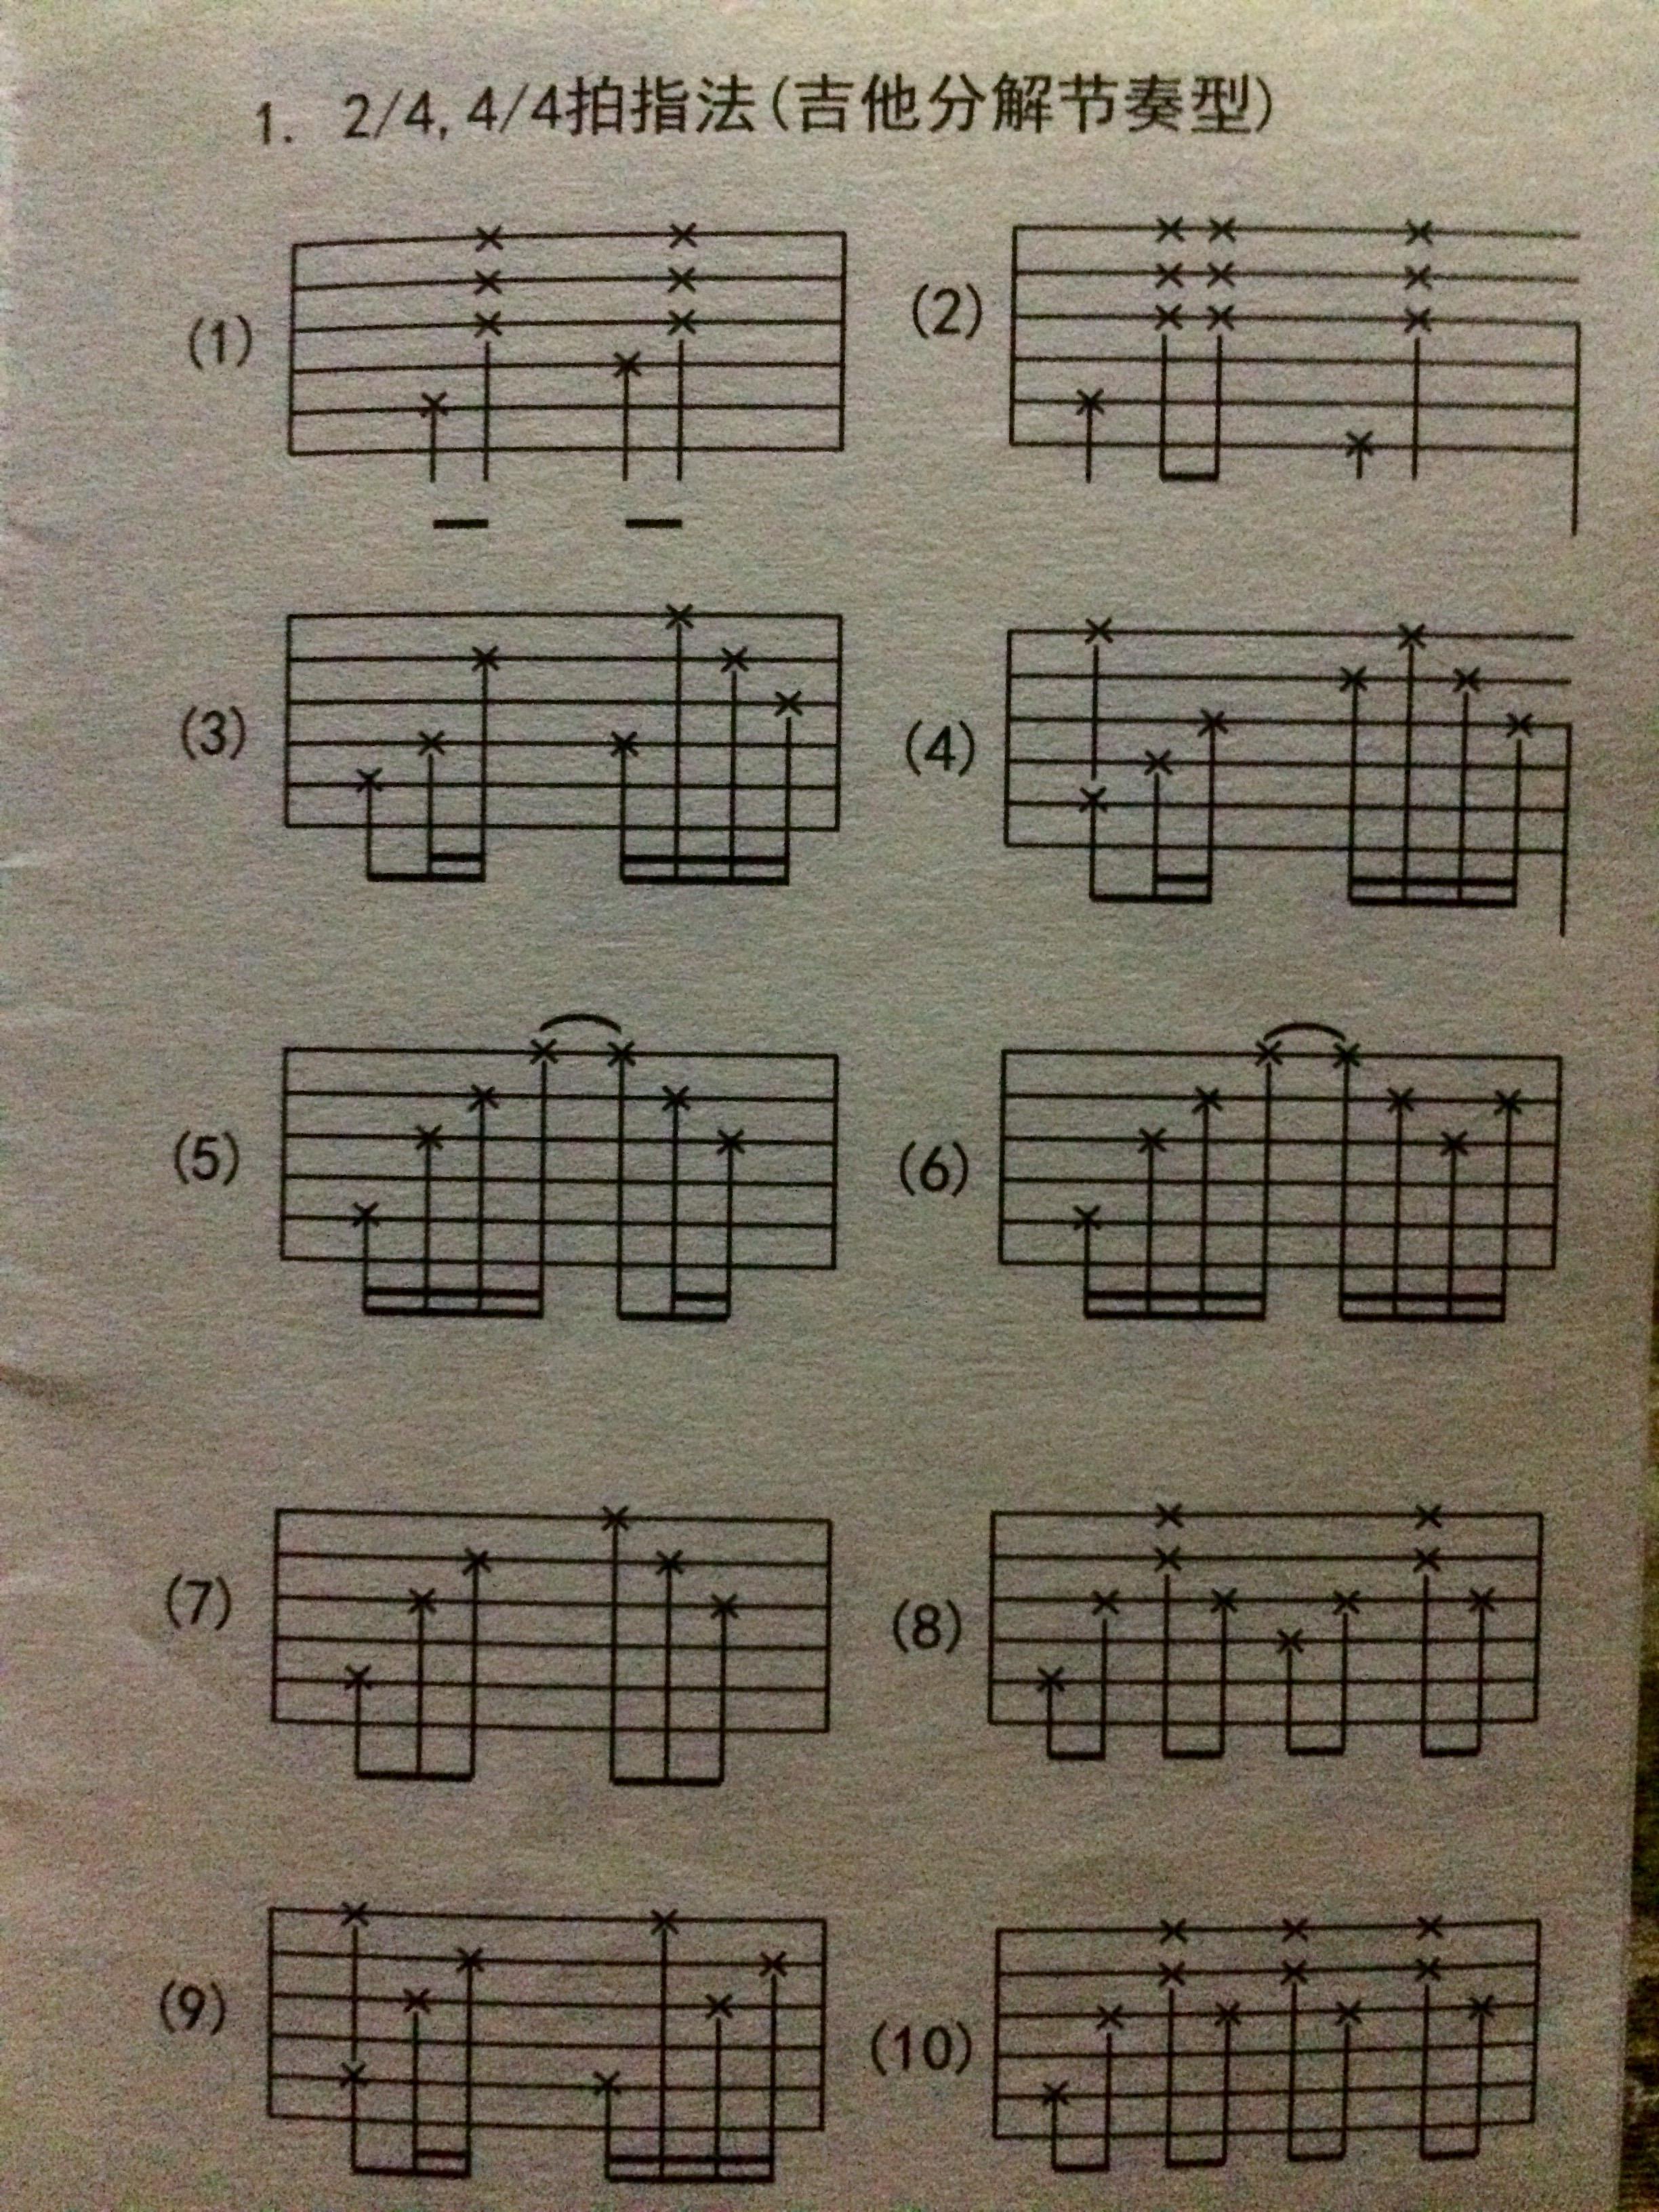 节奏型又分为扫弦和分解和弦两种,扫弦就是几根弦同时拨响,而分解和弦